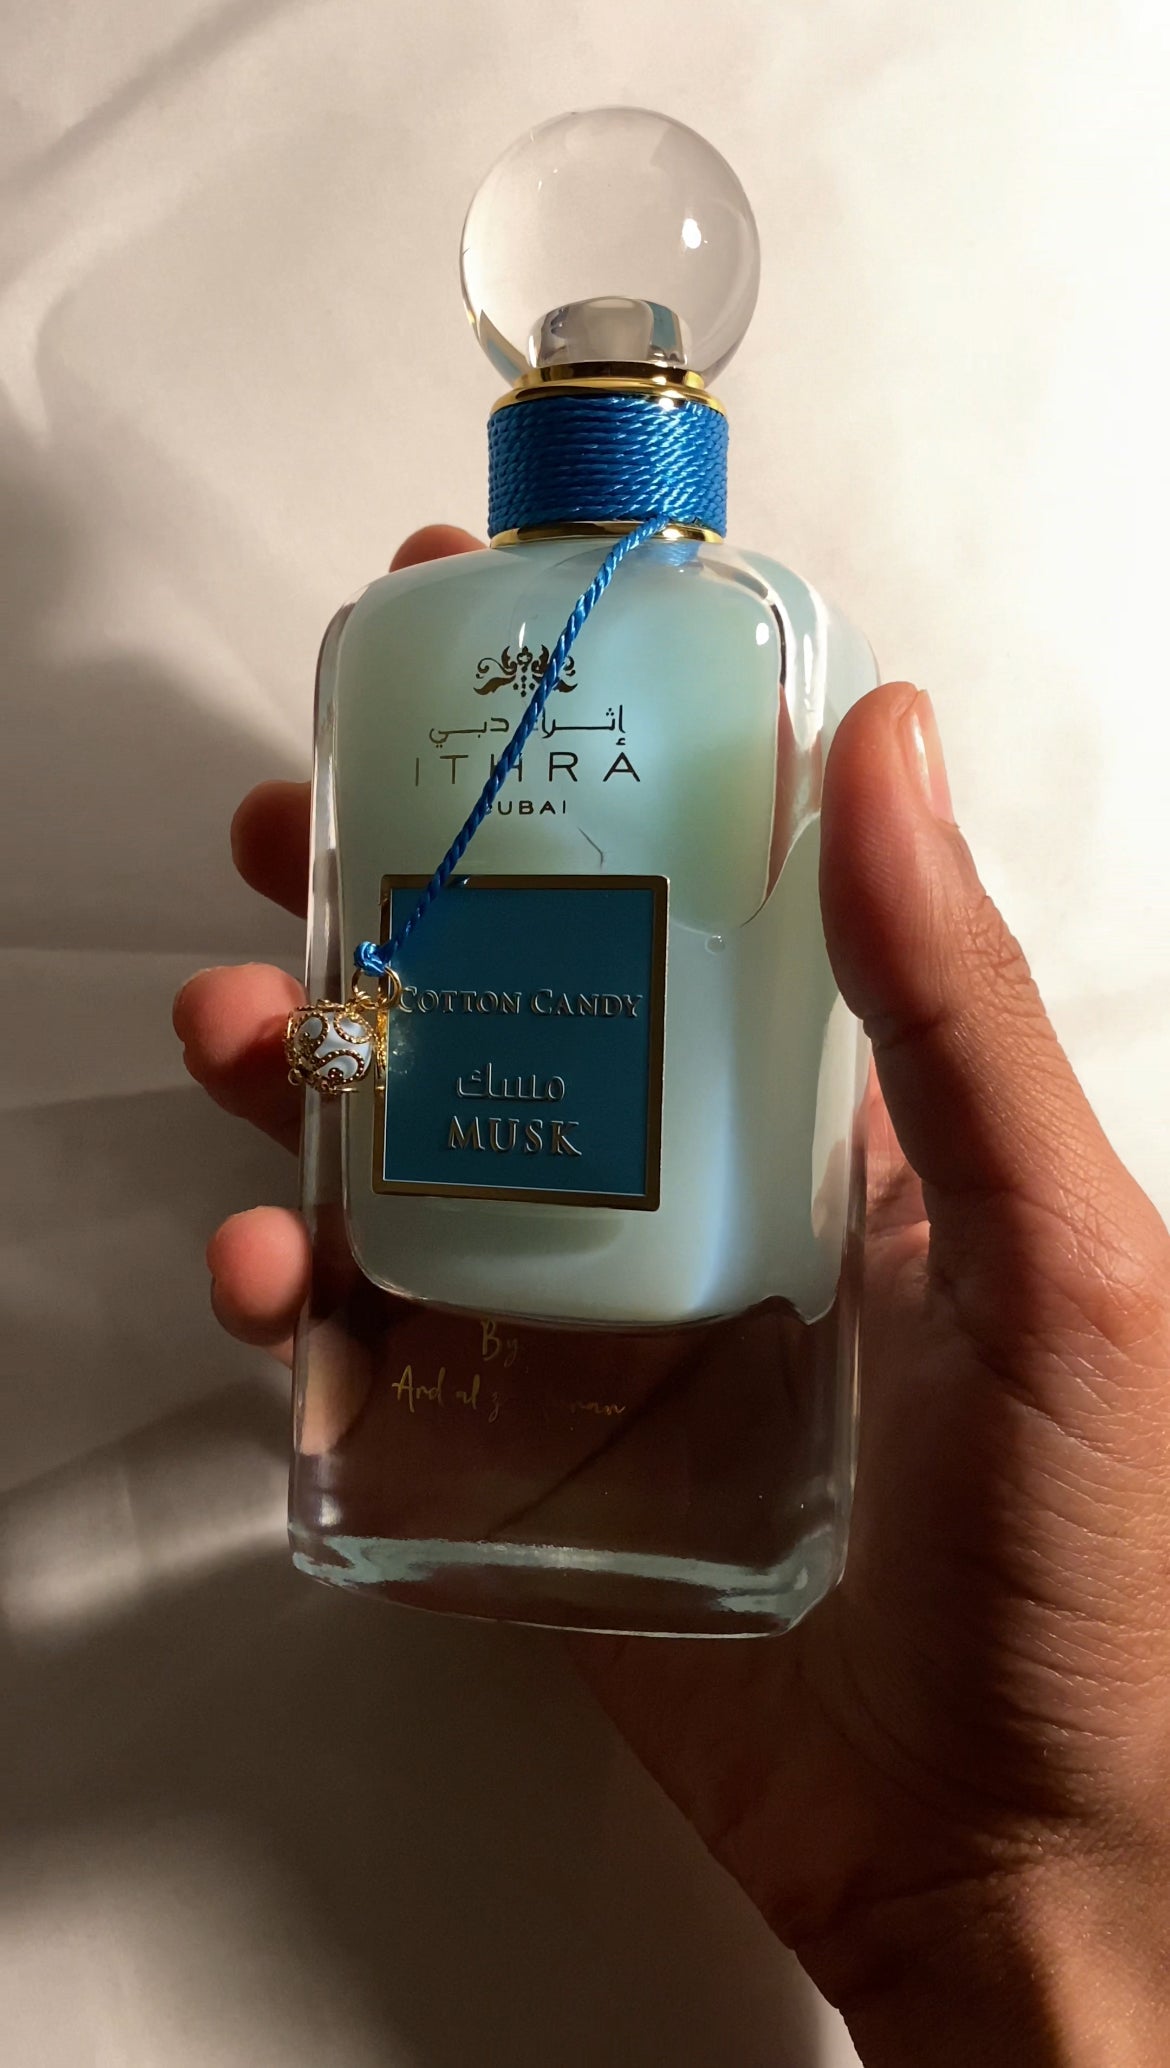 Cotton Candy Musk - Parfum orientale unisexe de la maison Ithra